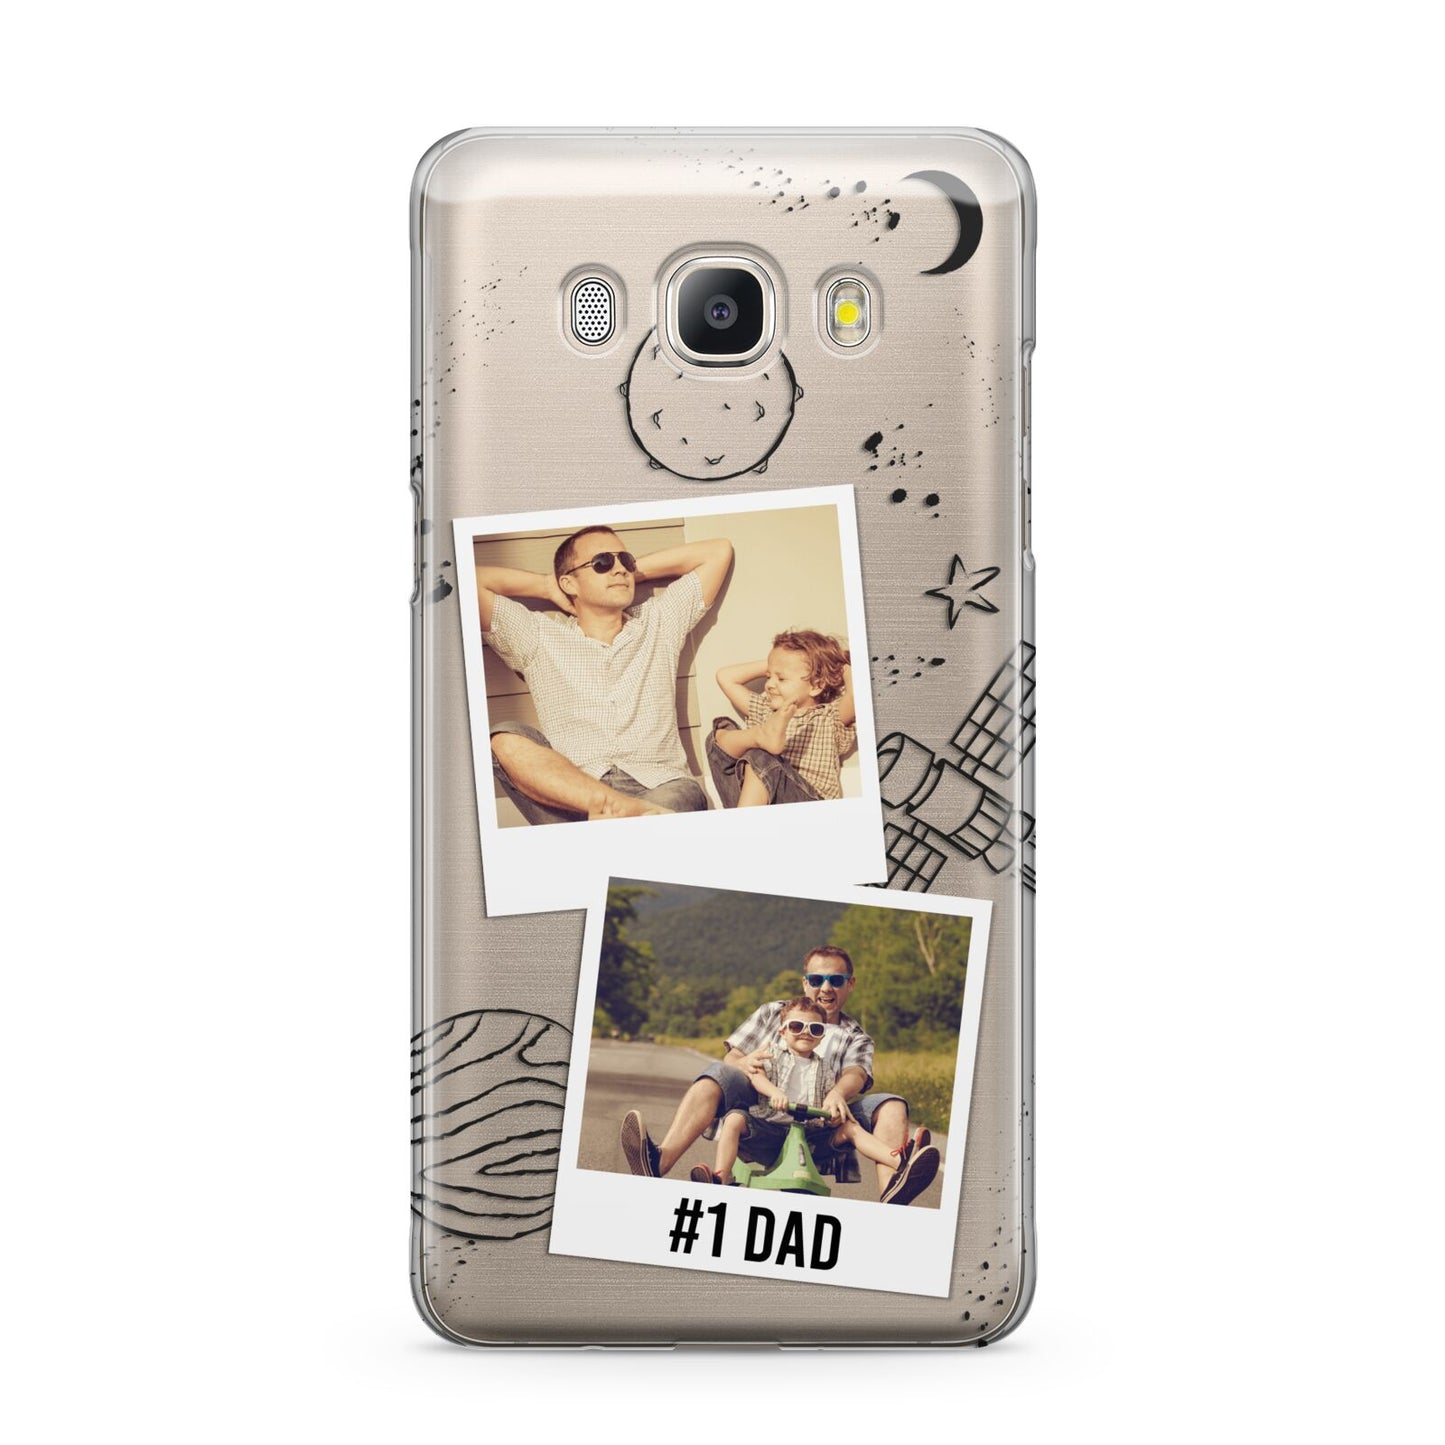 Personalised Dad Photos Samsung Galaxy J5 2016 Case